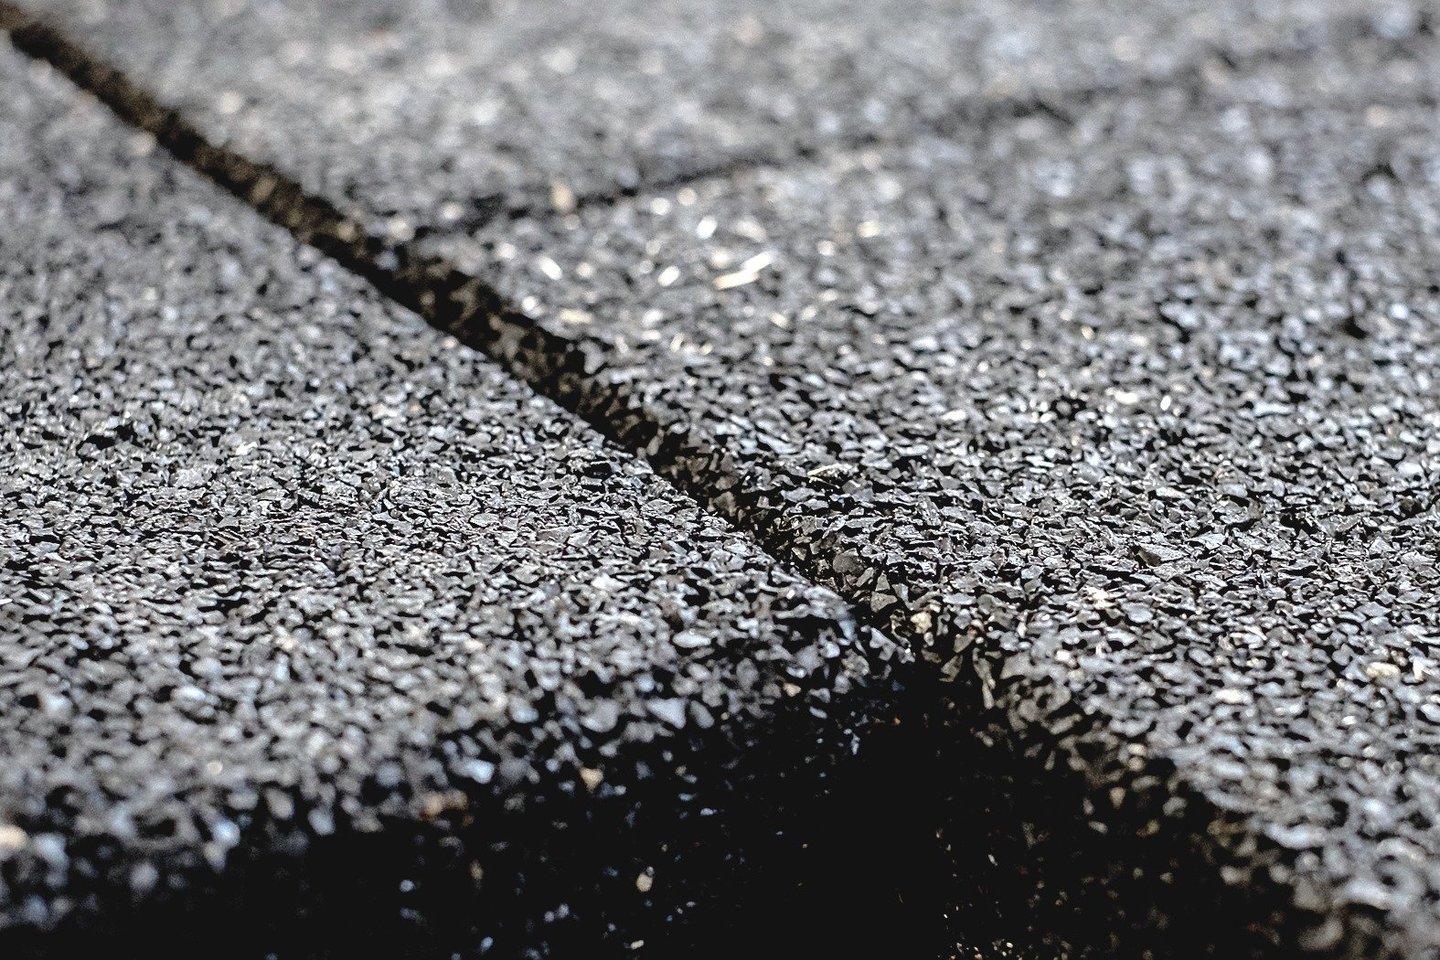 Guminiai kilimėliai naudojami sporto salėse, sporto aikštynuose, pramoninėse zonose.